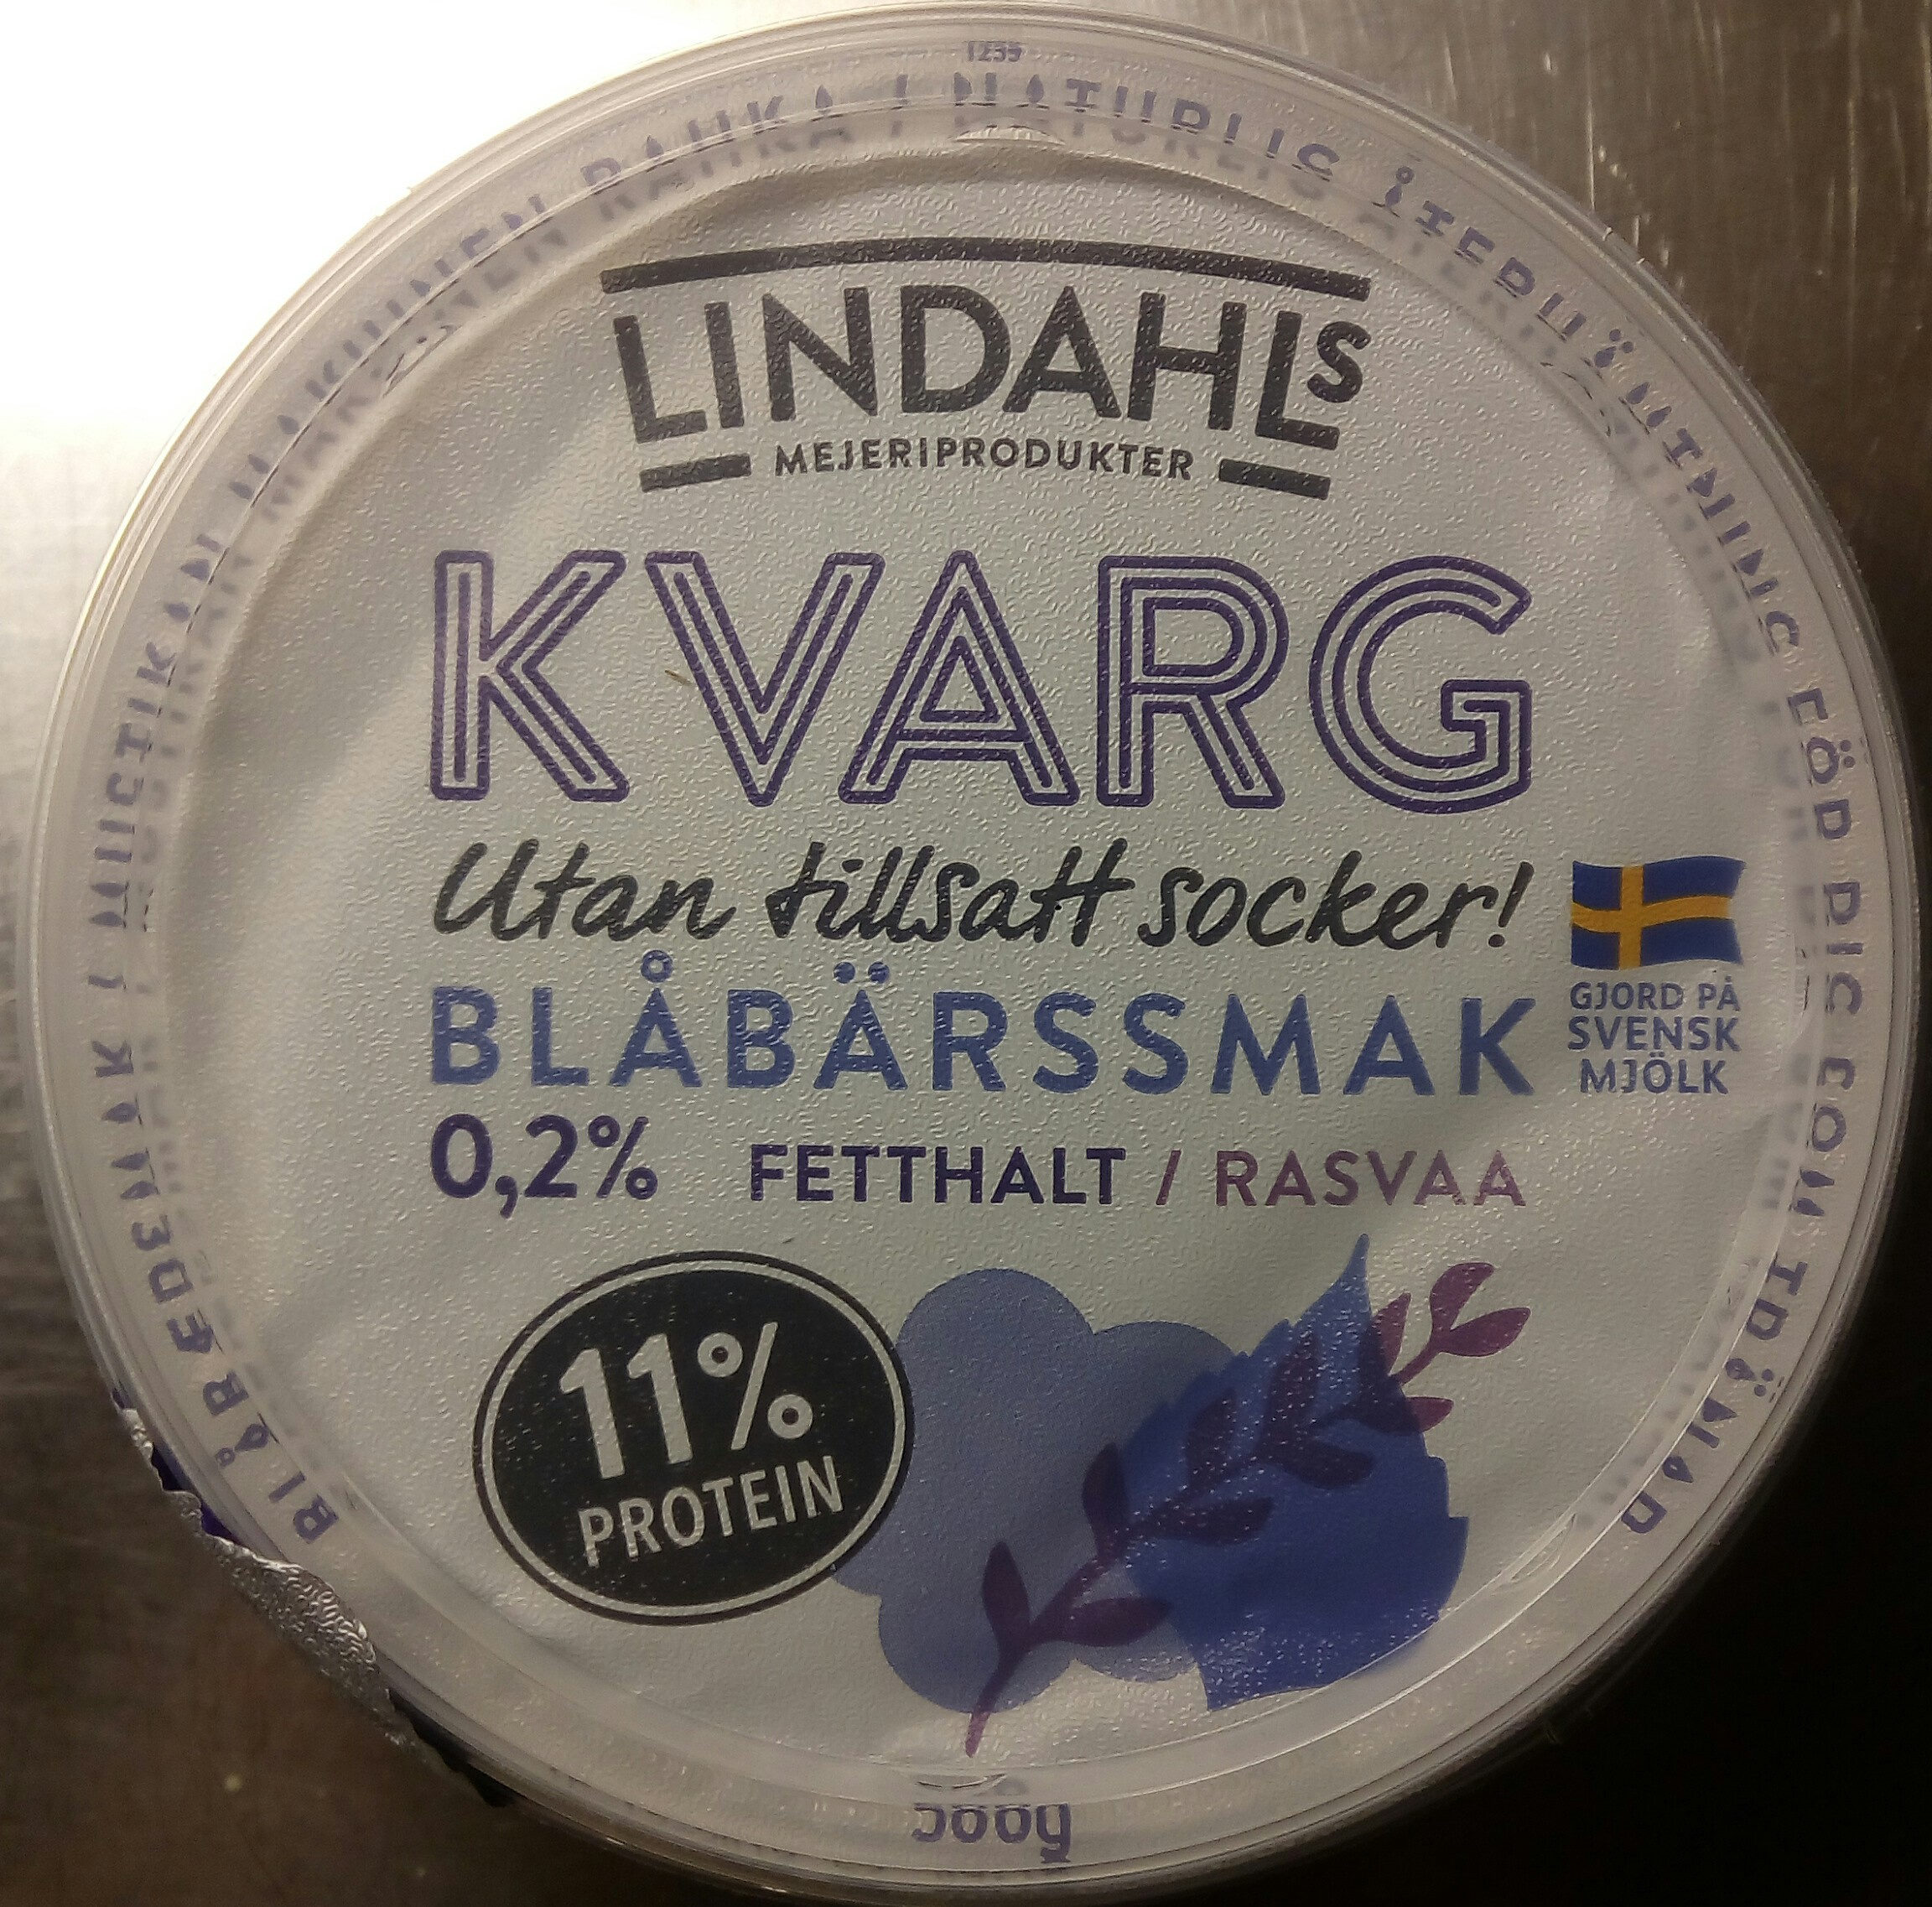 Lindahls Kvarg Blåbärssmak - Produkt - sv